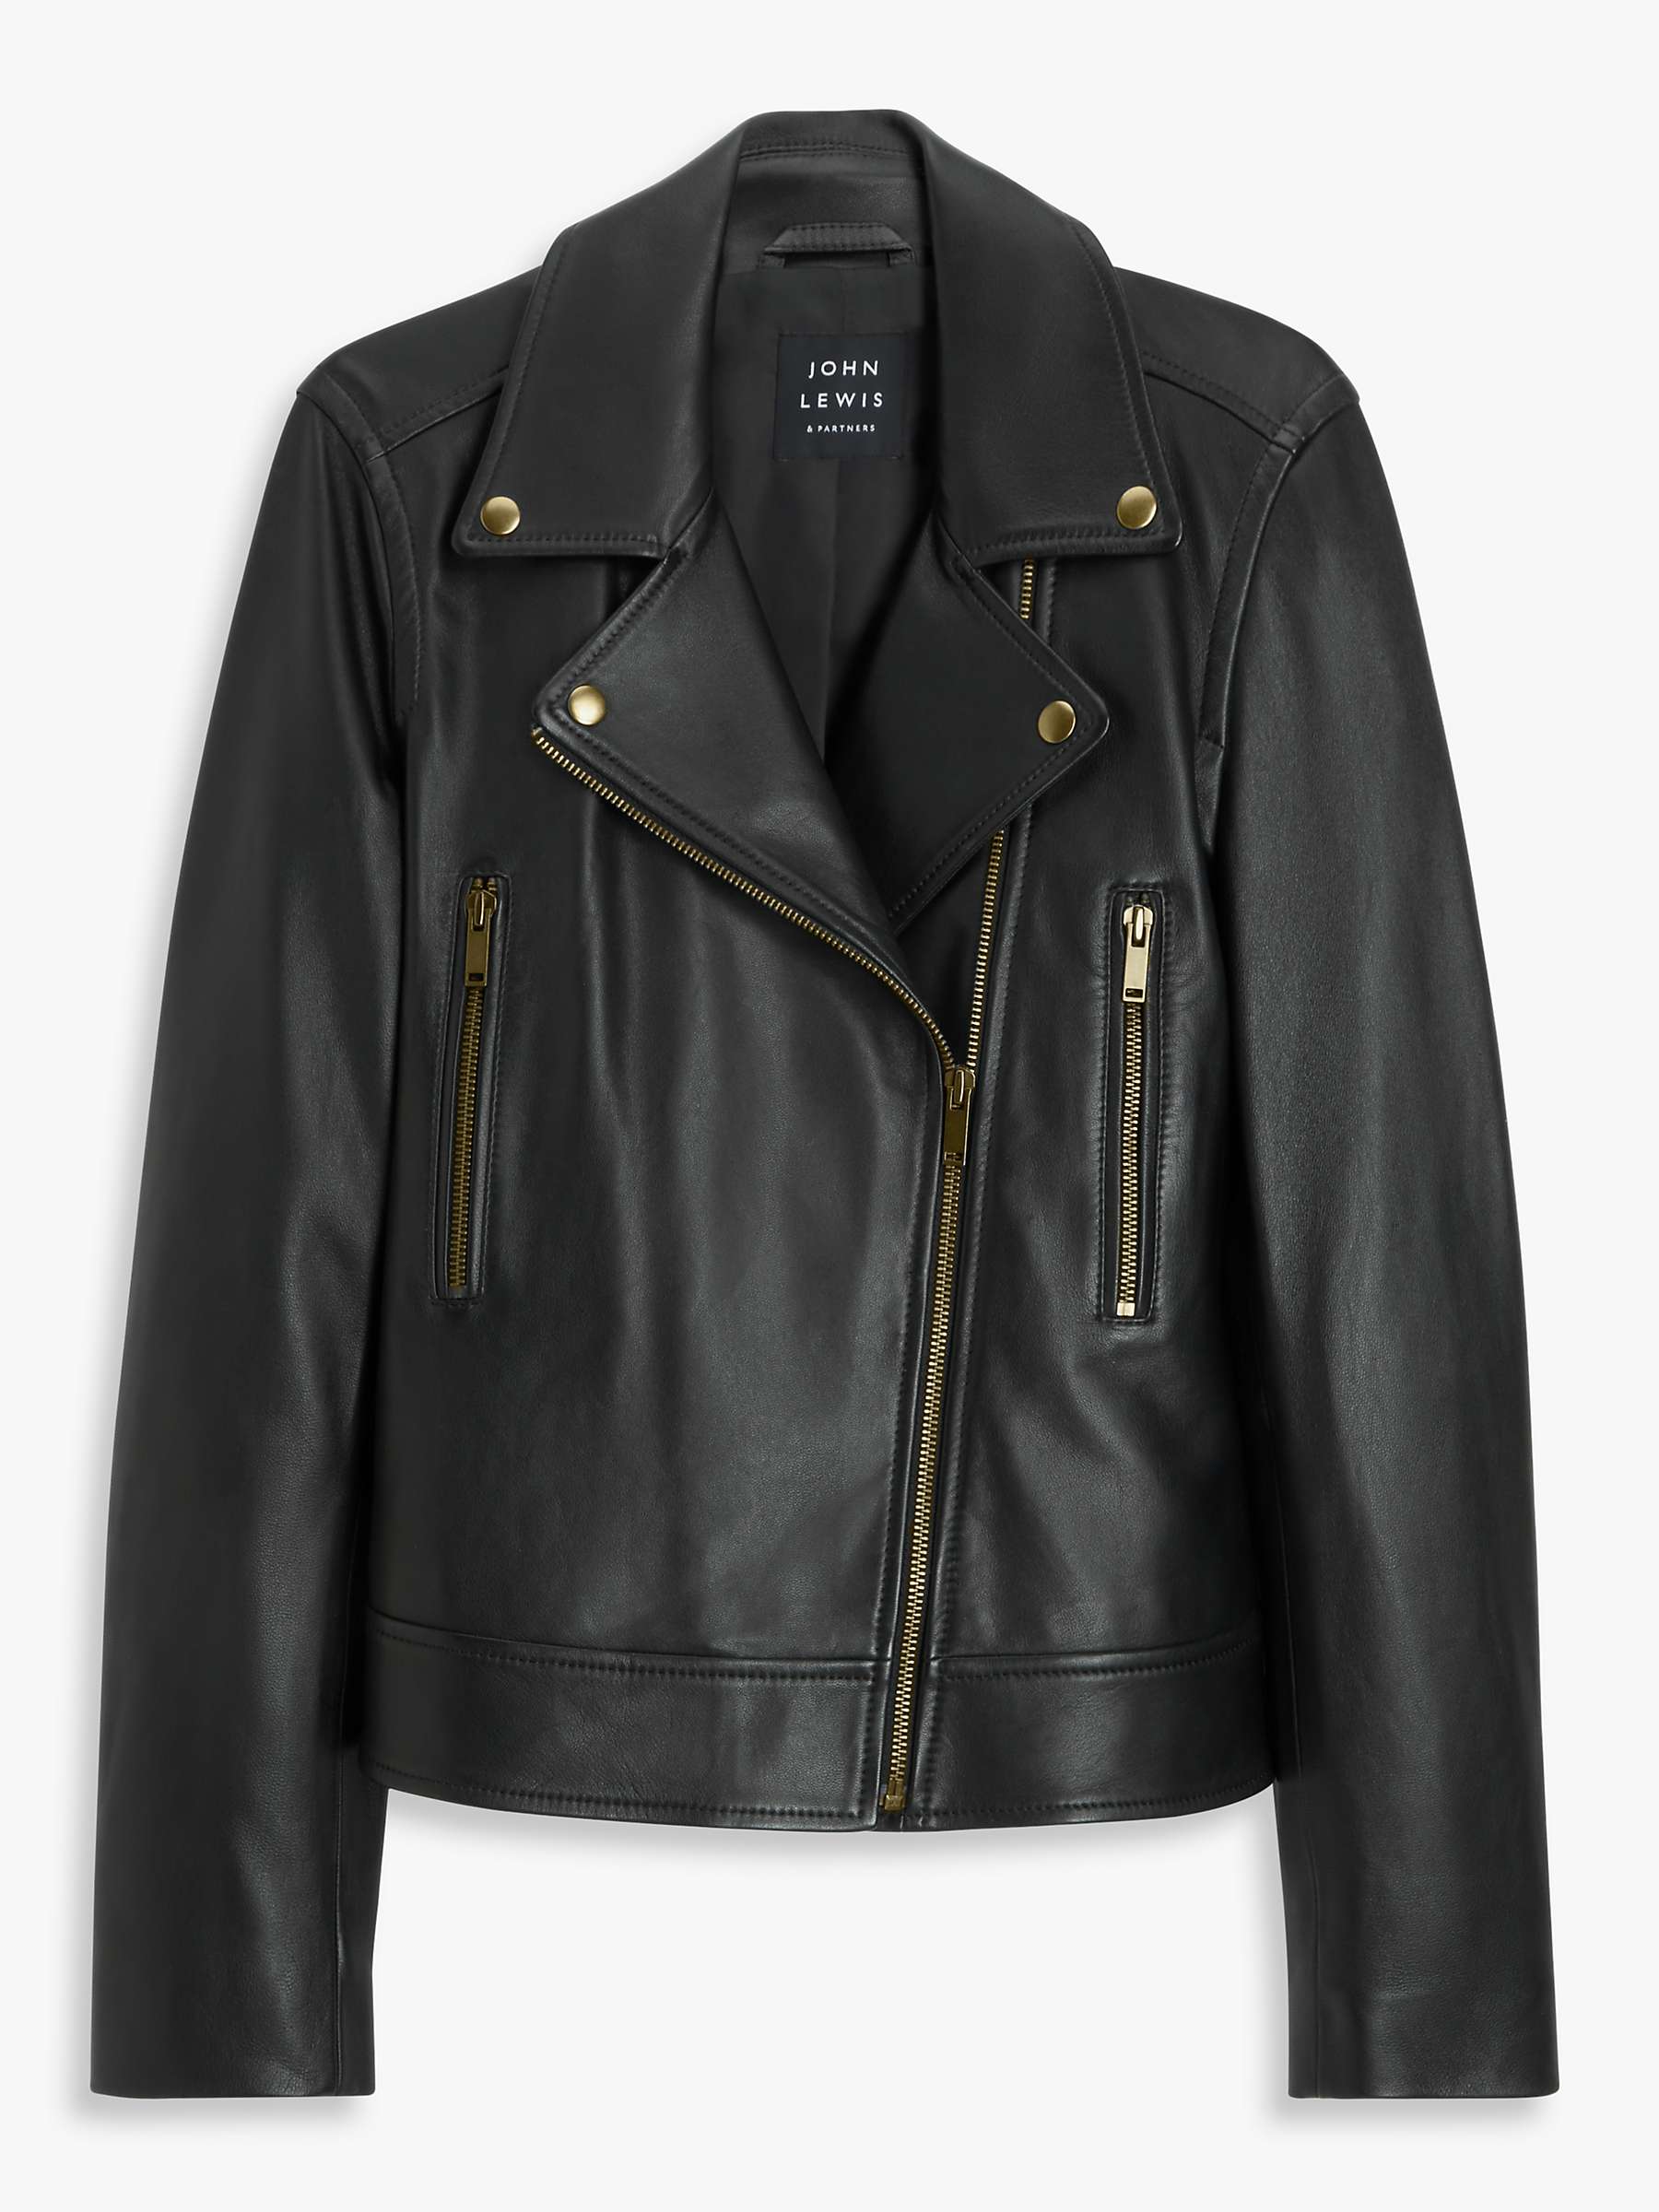 Buy John Lewis Leather Biker Jacket, Black Online at johnlewis.com